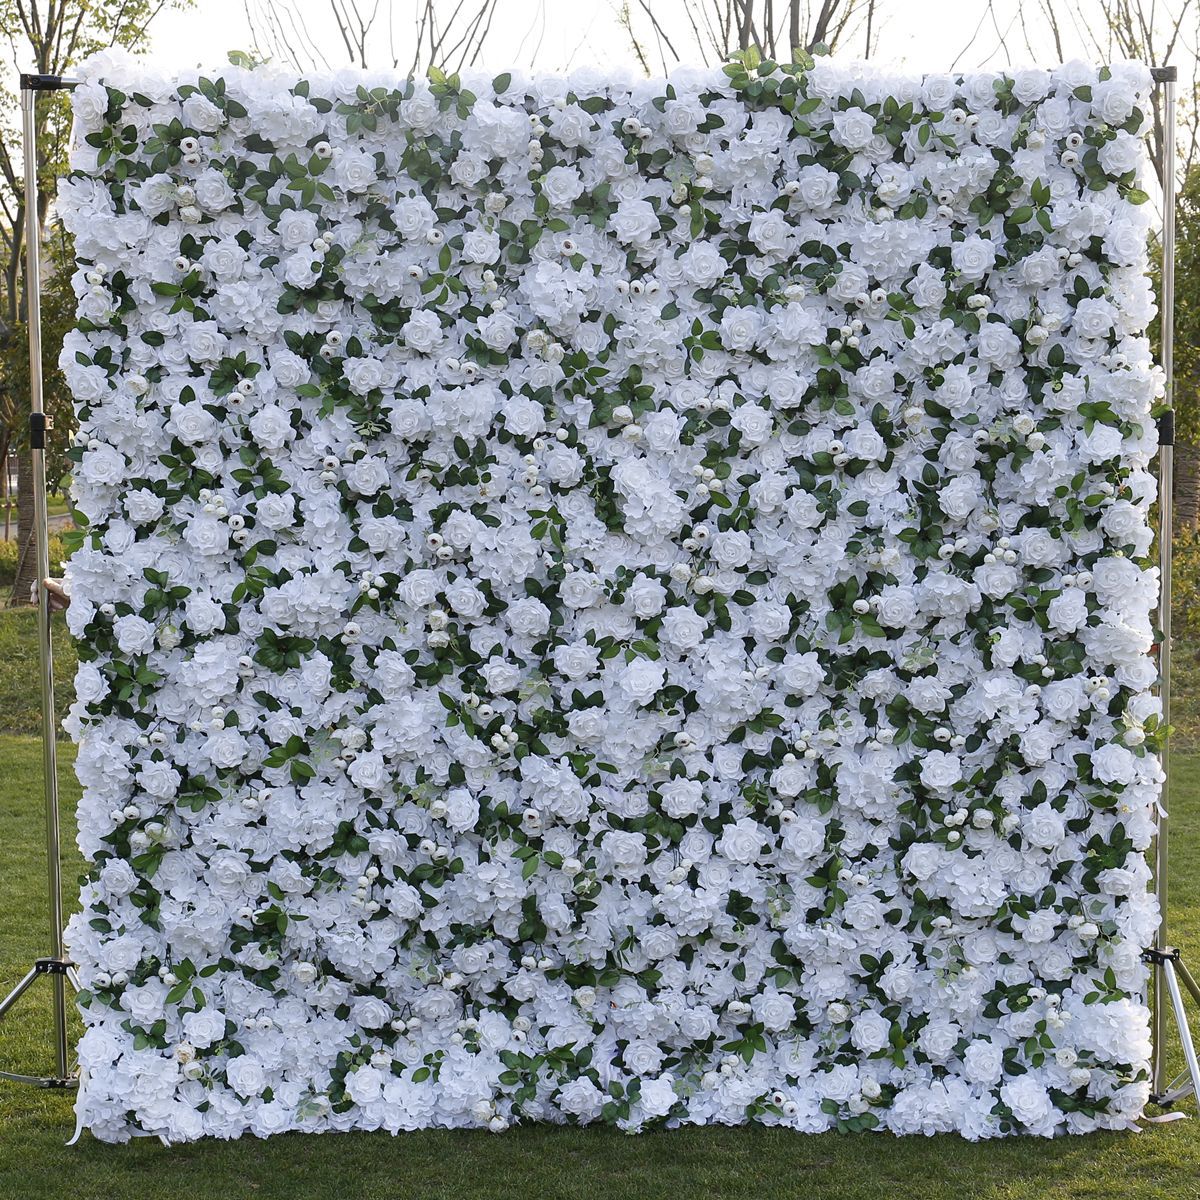 꽃 예술 5D 입체 배경 숲 스타일 웨딩 장식 및 웨딩 장식의 천 배경 시뮬레이션이 있는 흰색 꽃 벽